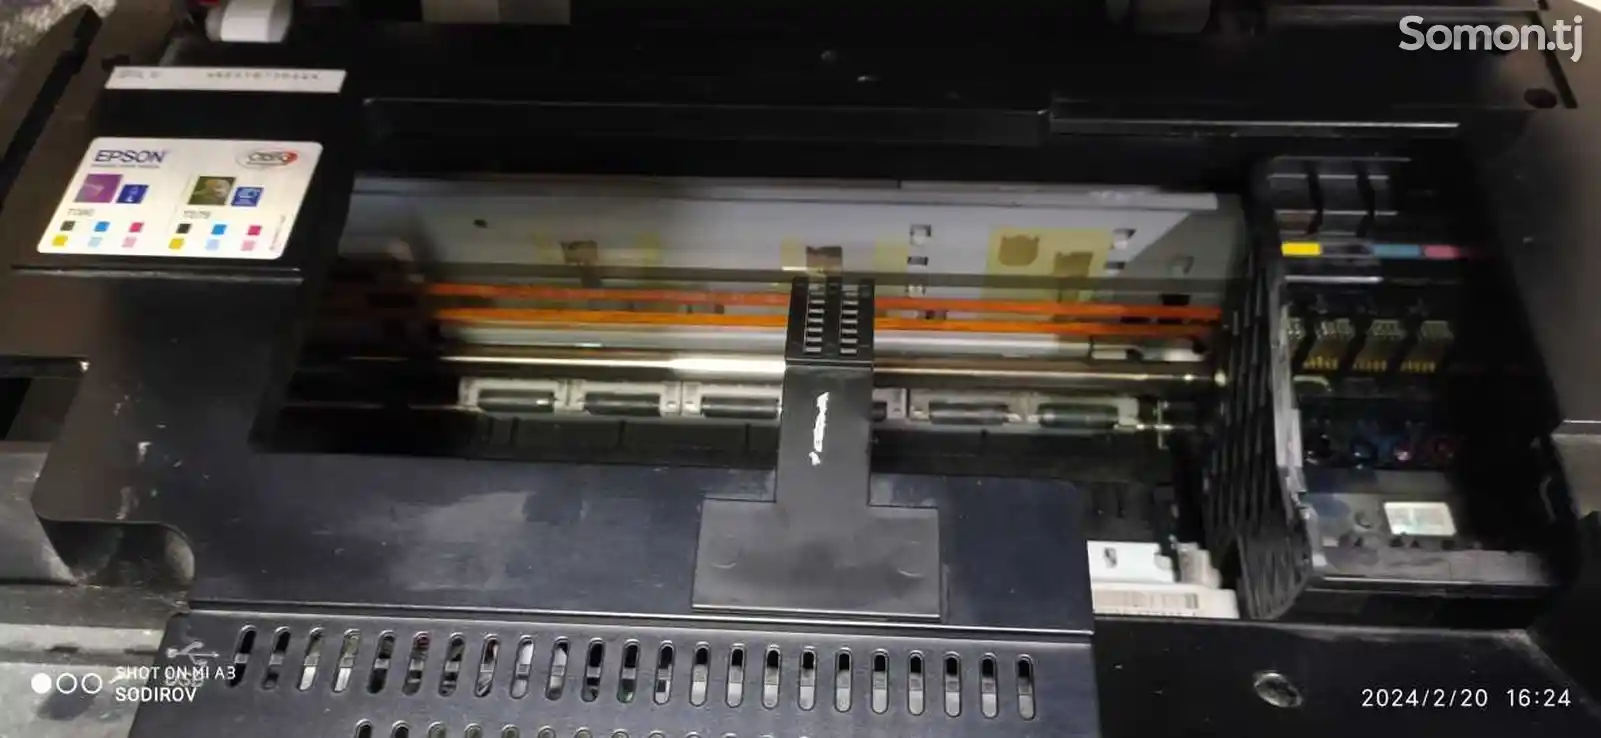 Принтер Epson TX650 3 в 1-3